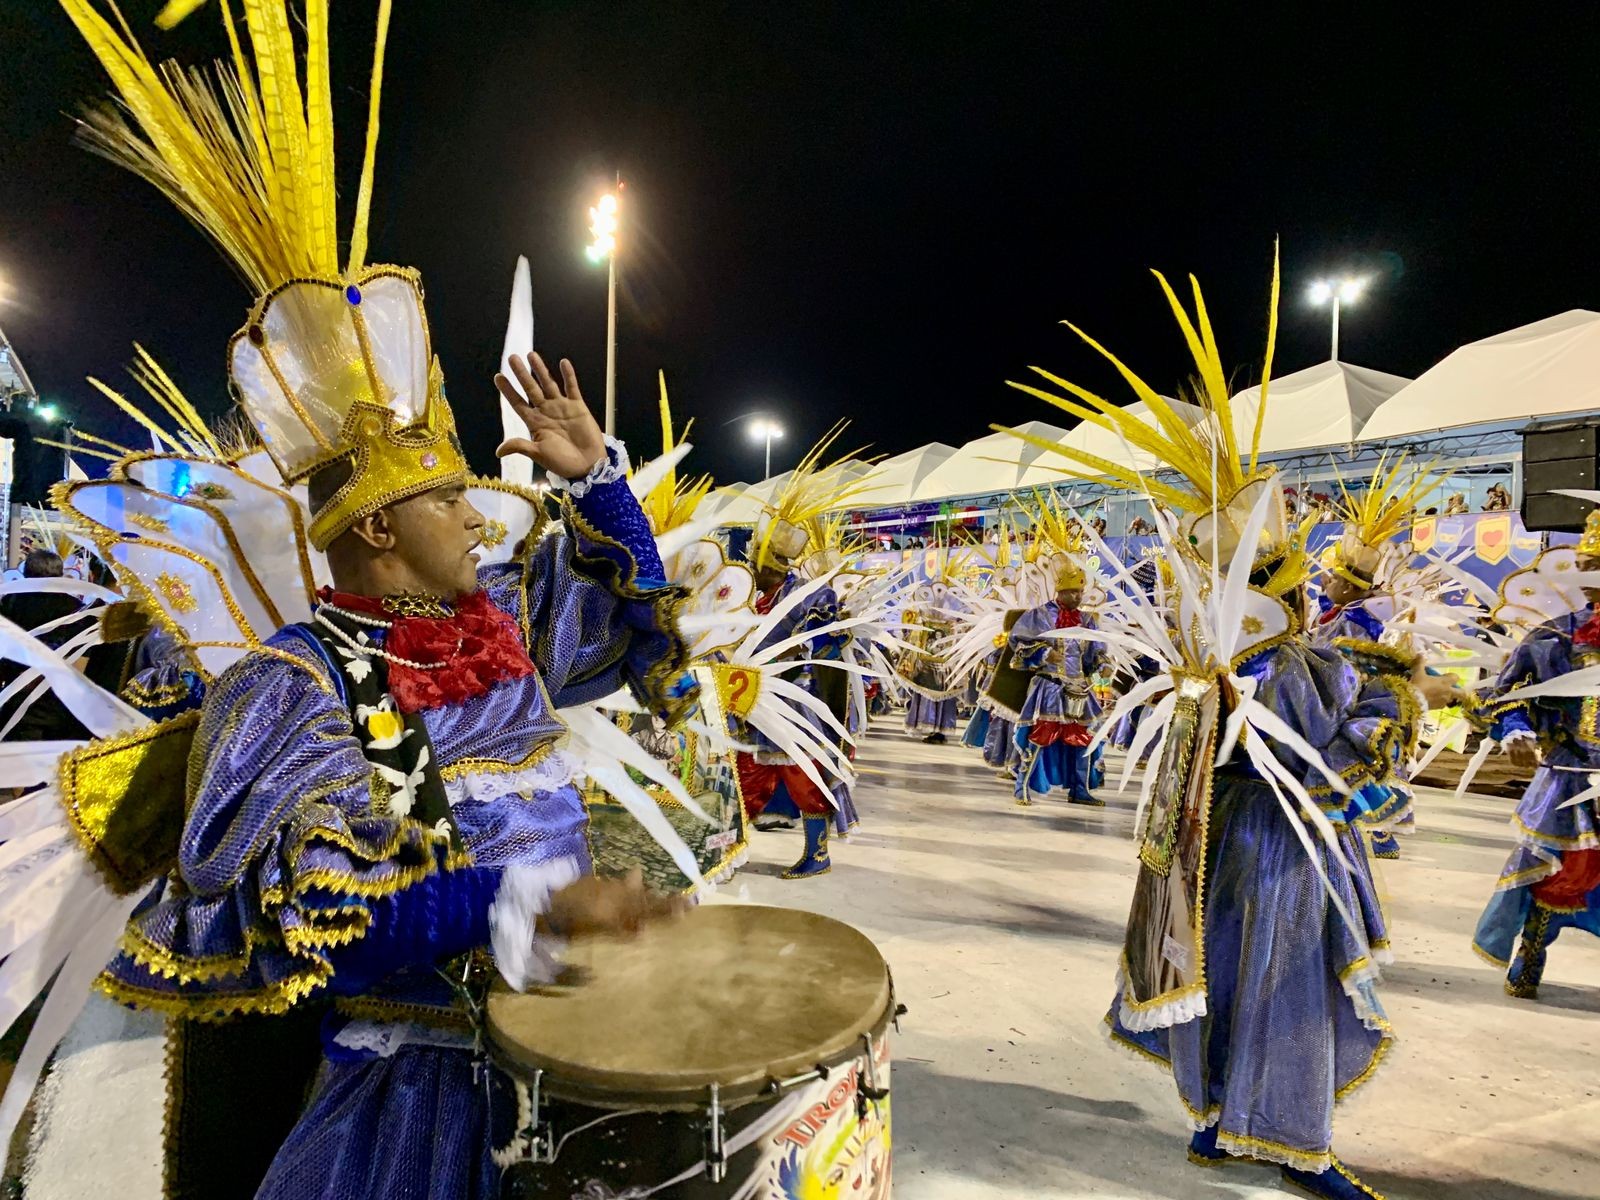 Desfiles na Passarela do Samba começam nesta sexta-feira (23) em São Luís; veja a programação completa